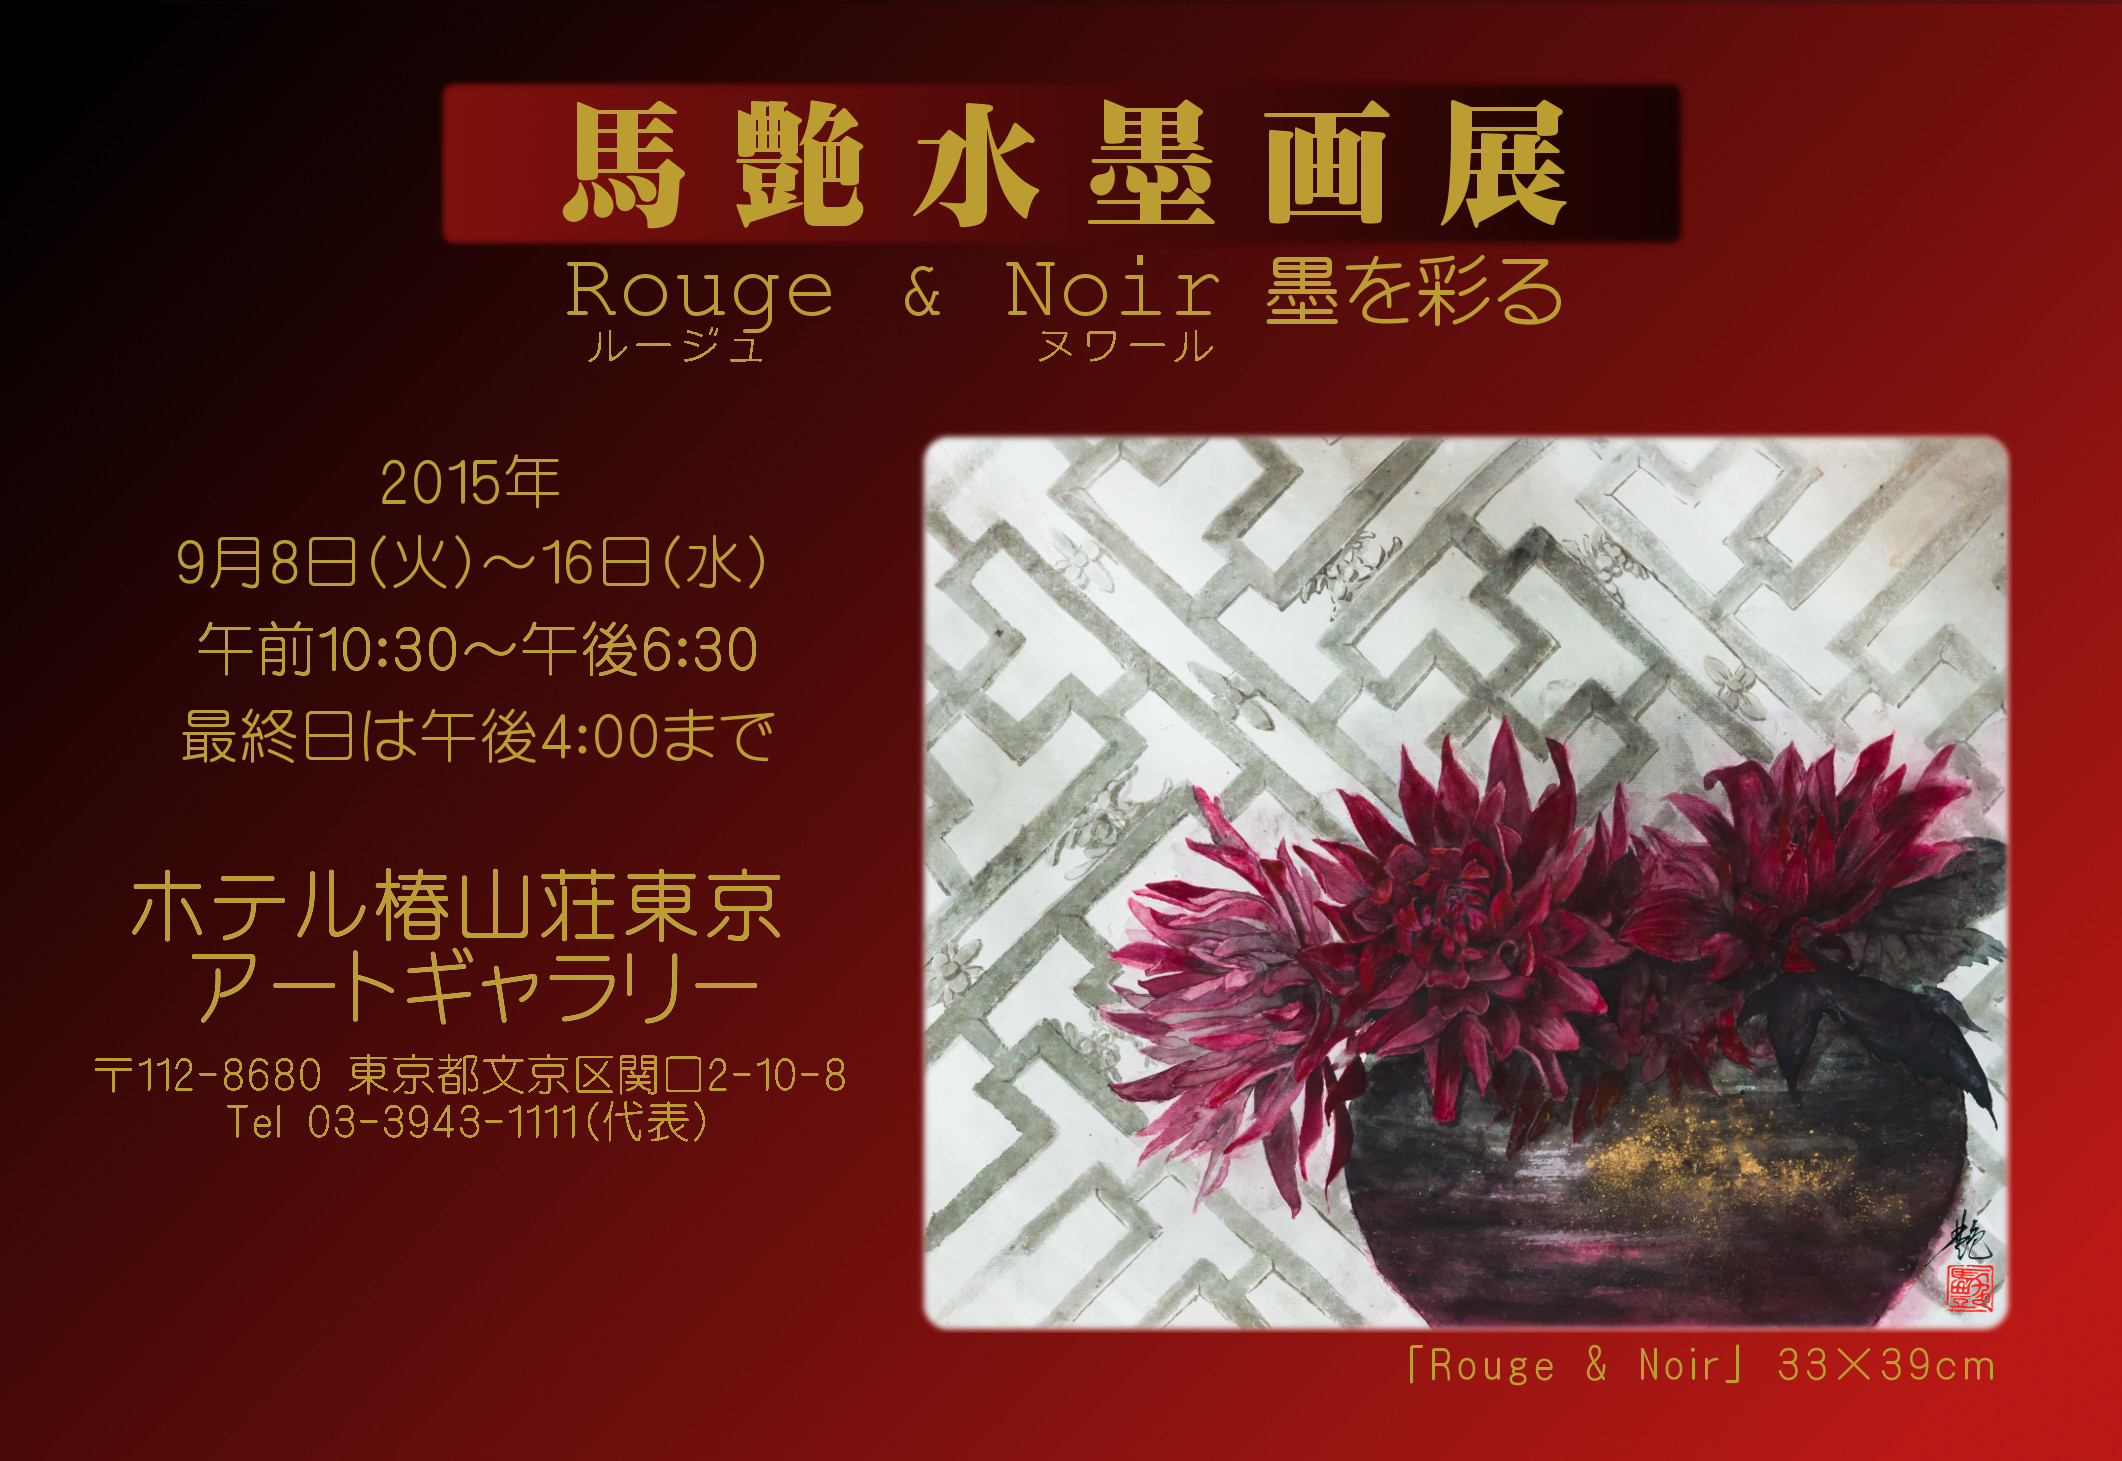 馬艶水墨画展「Rouge & Noir ・墨を彩る」in ホテル椿山荘東京